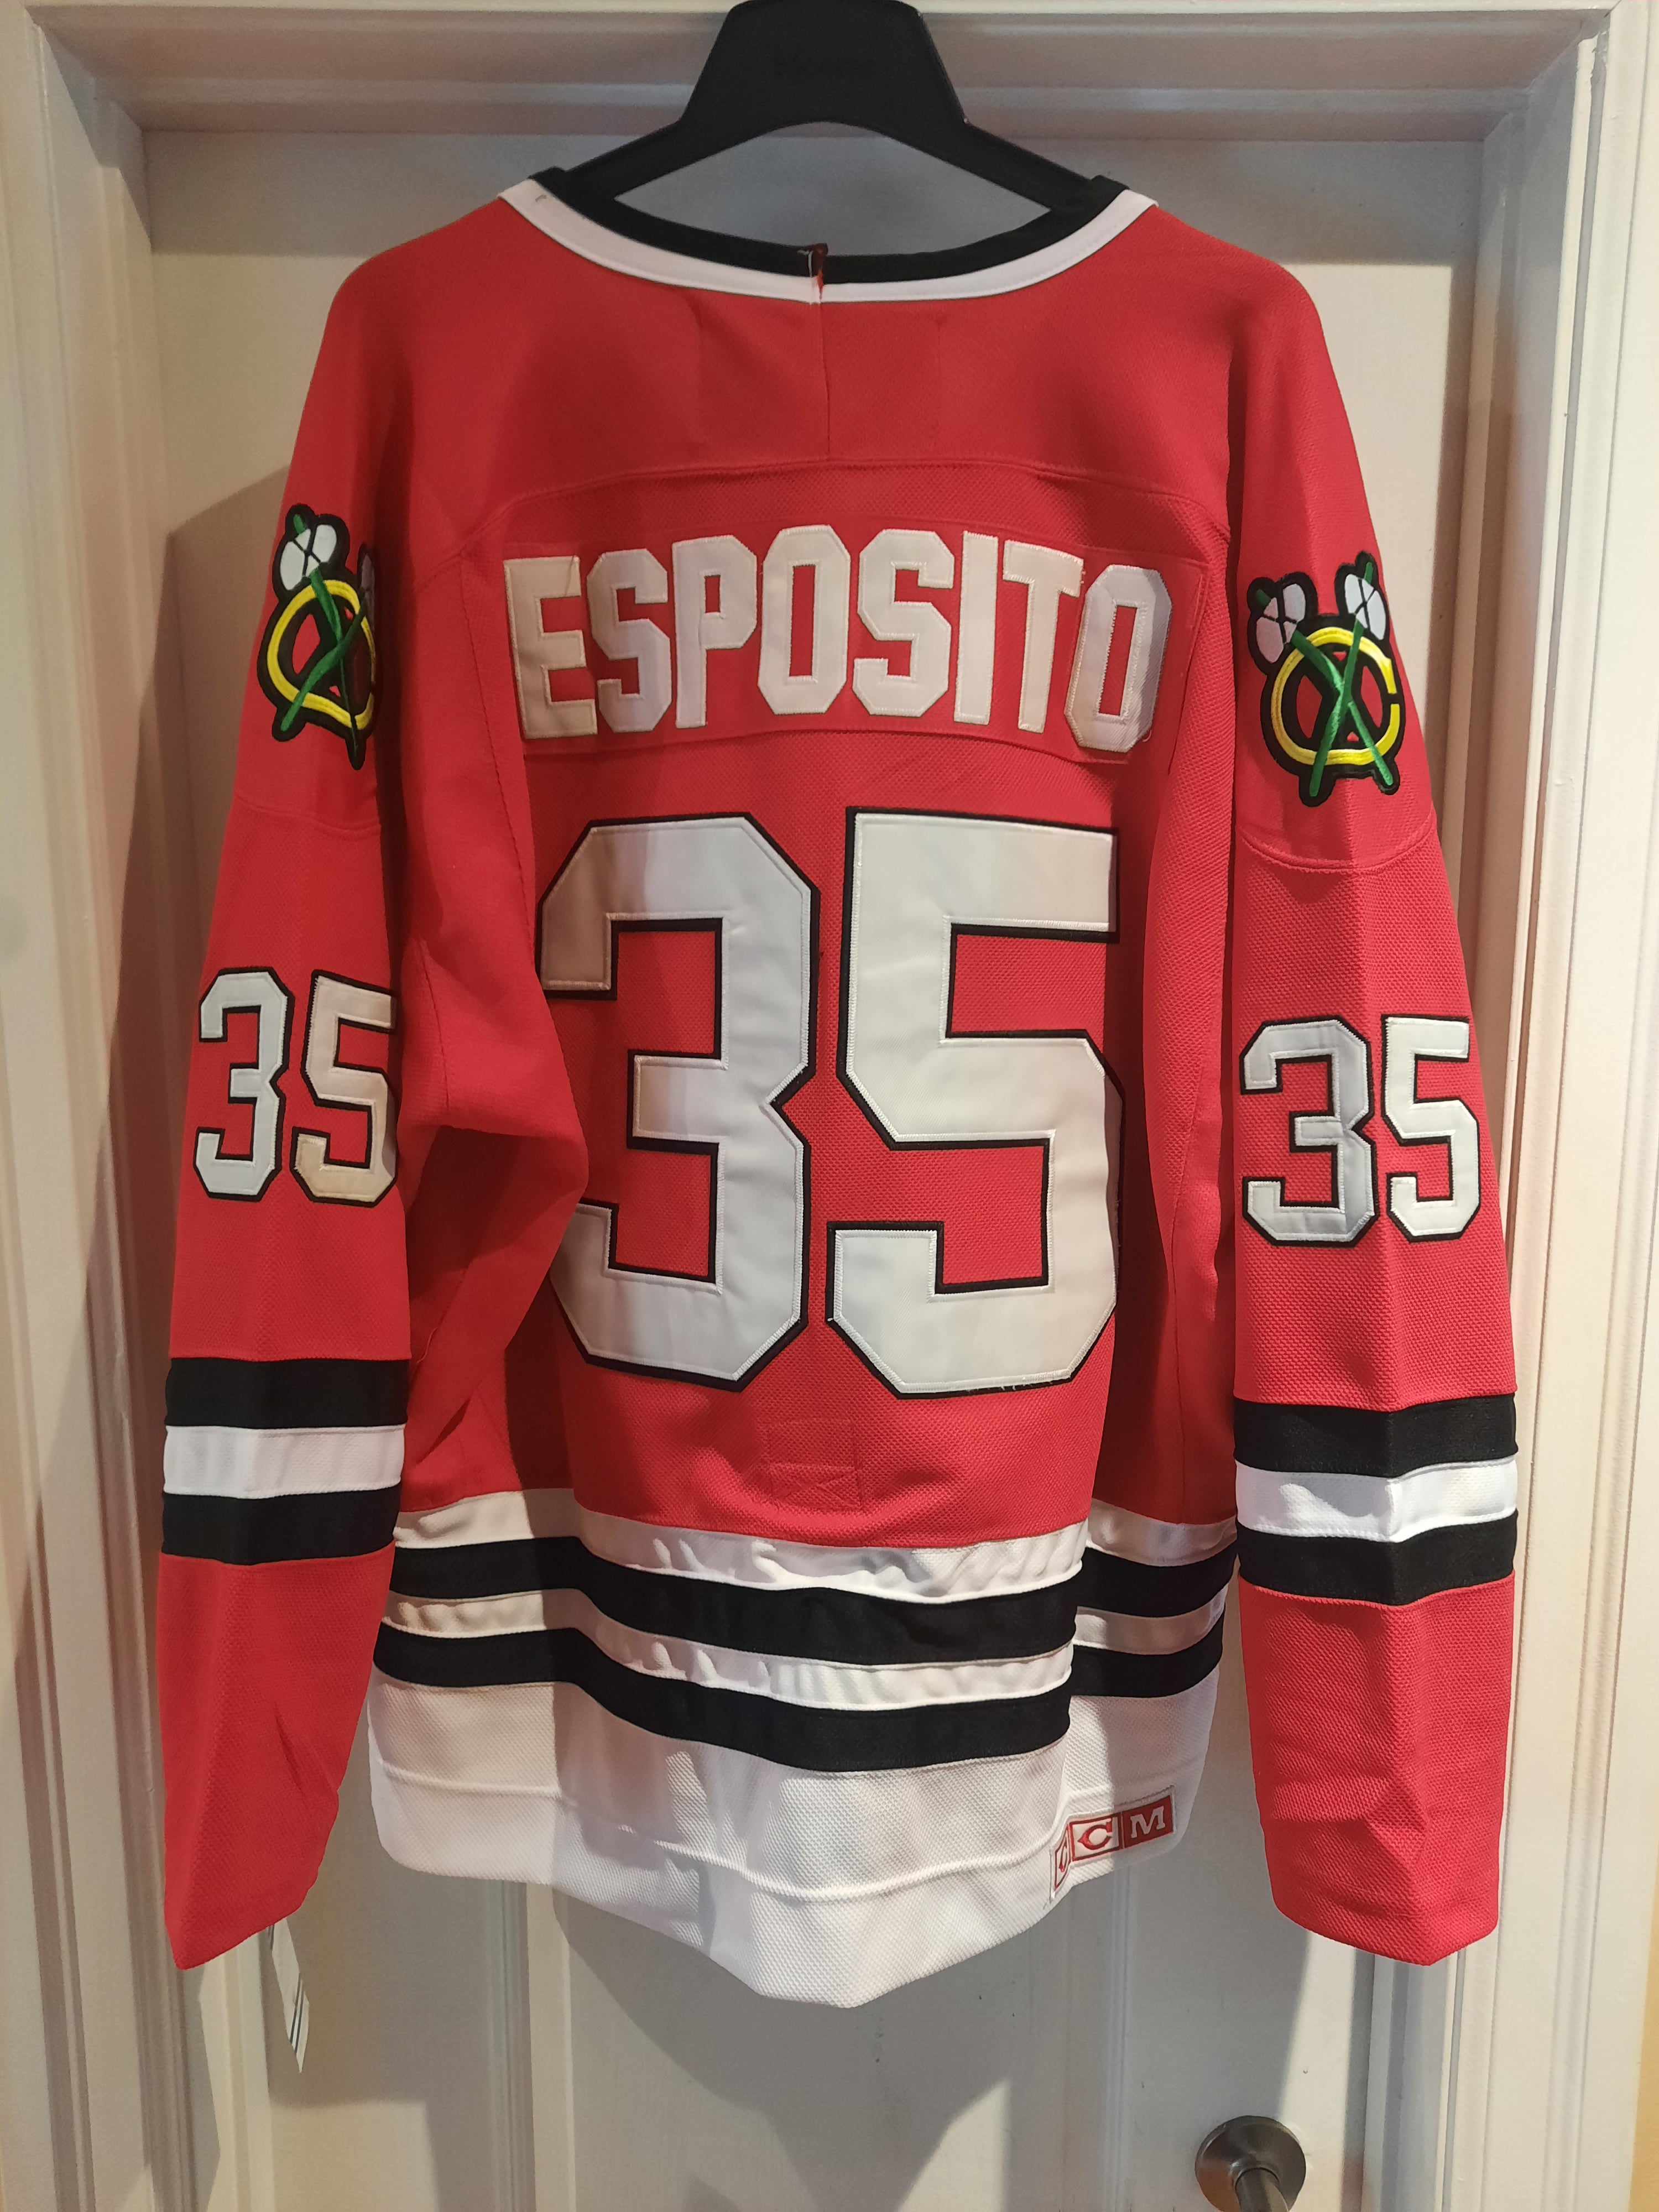 Chicago Blackhawks Tony Esposito jersey #35